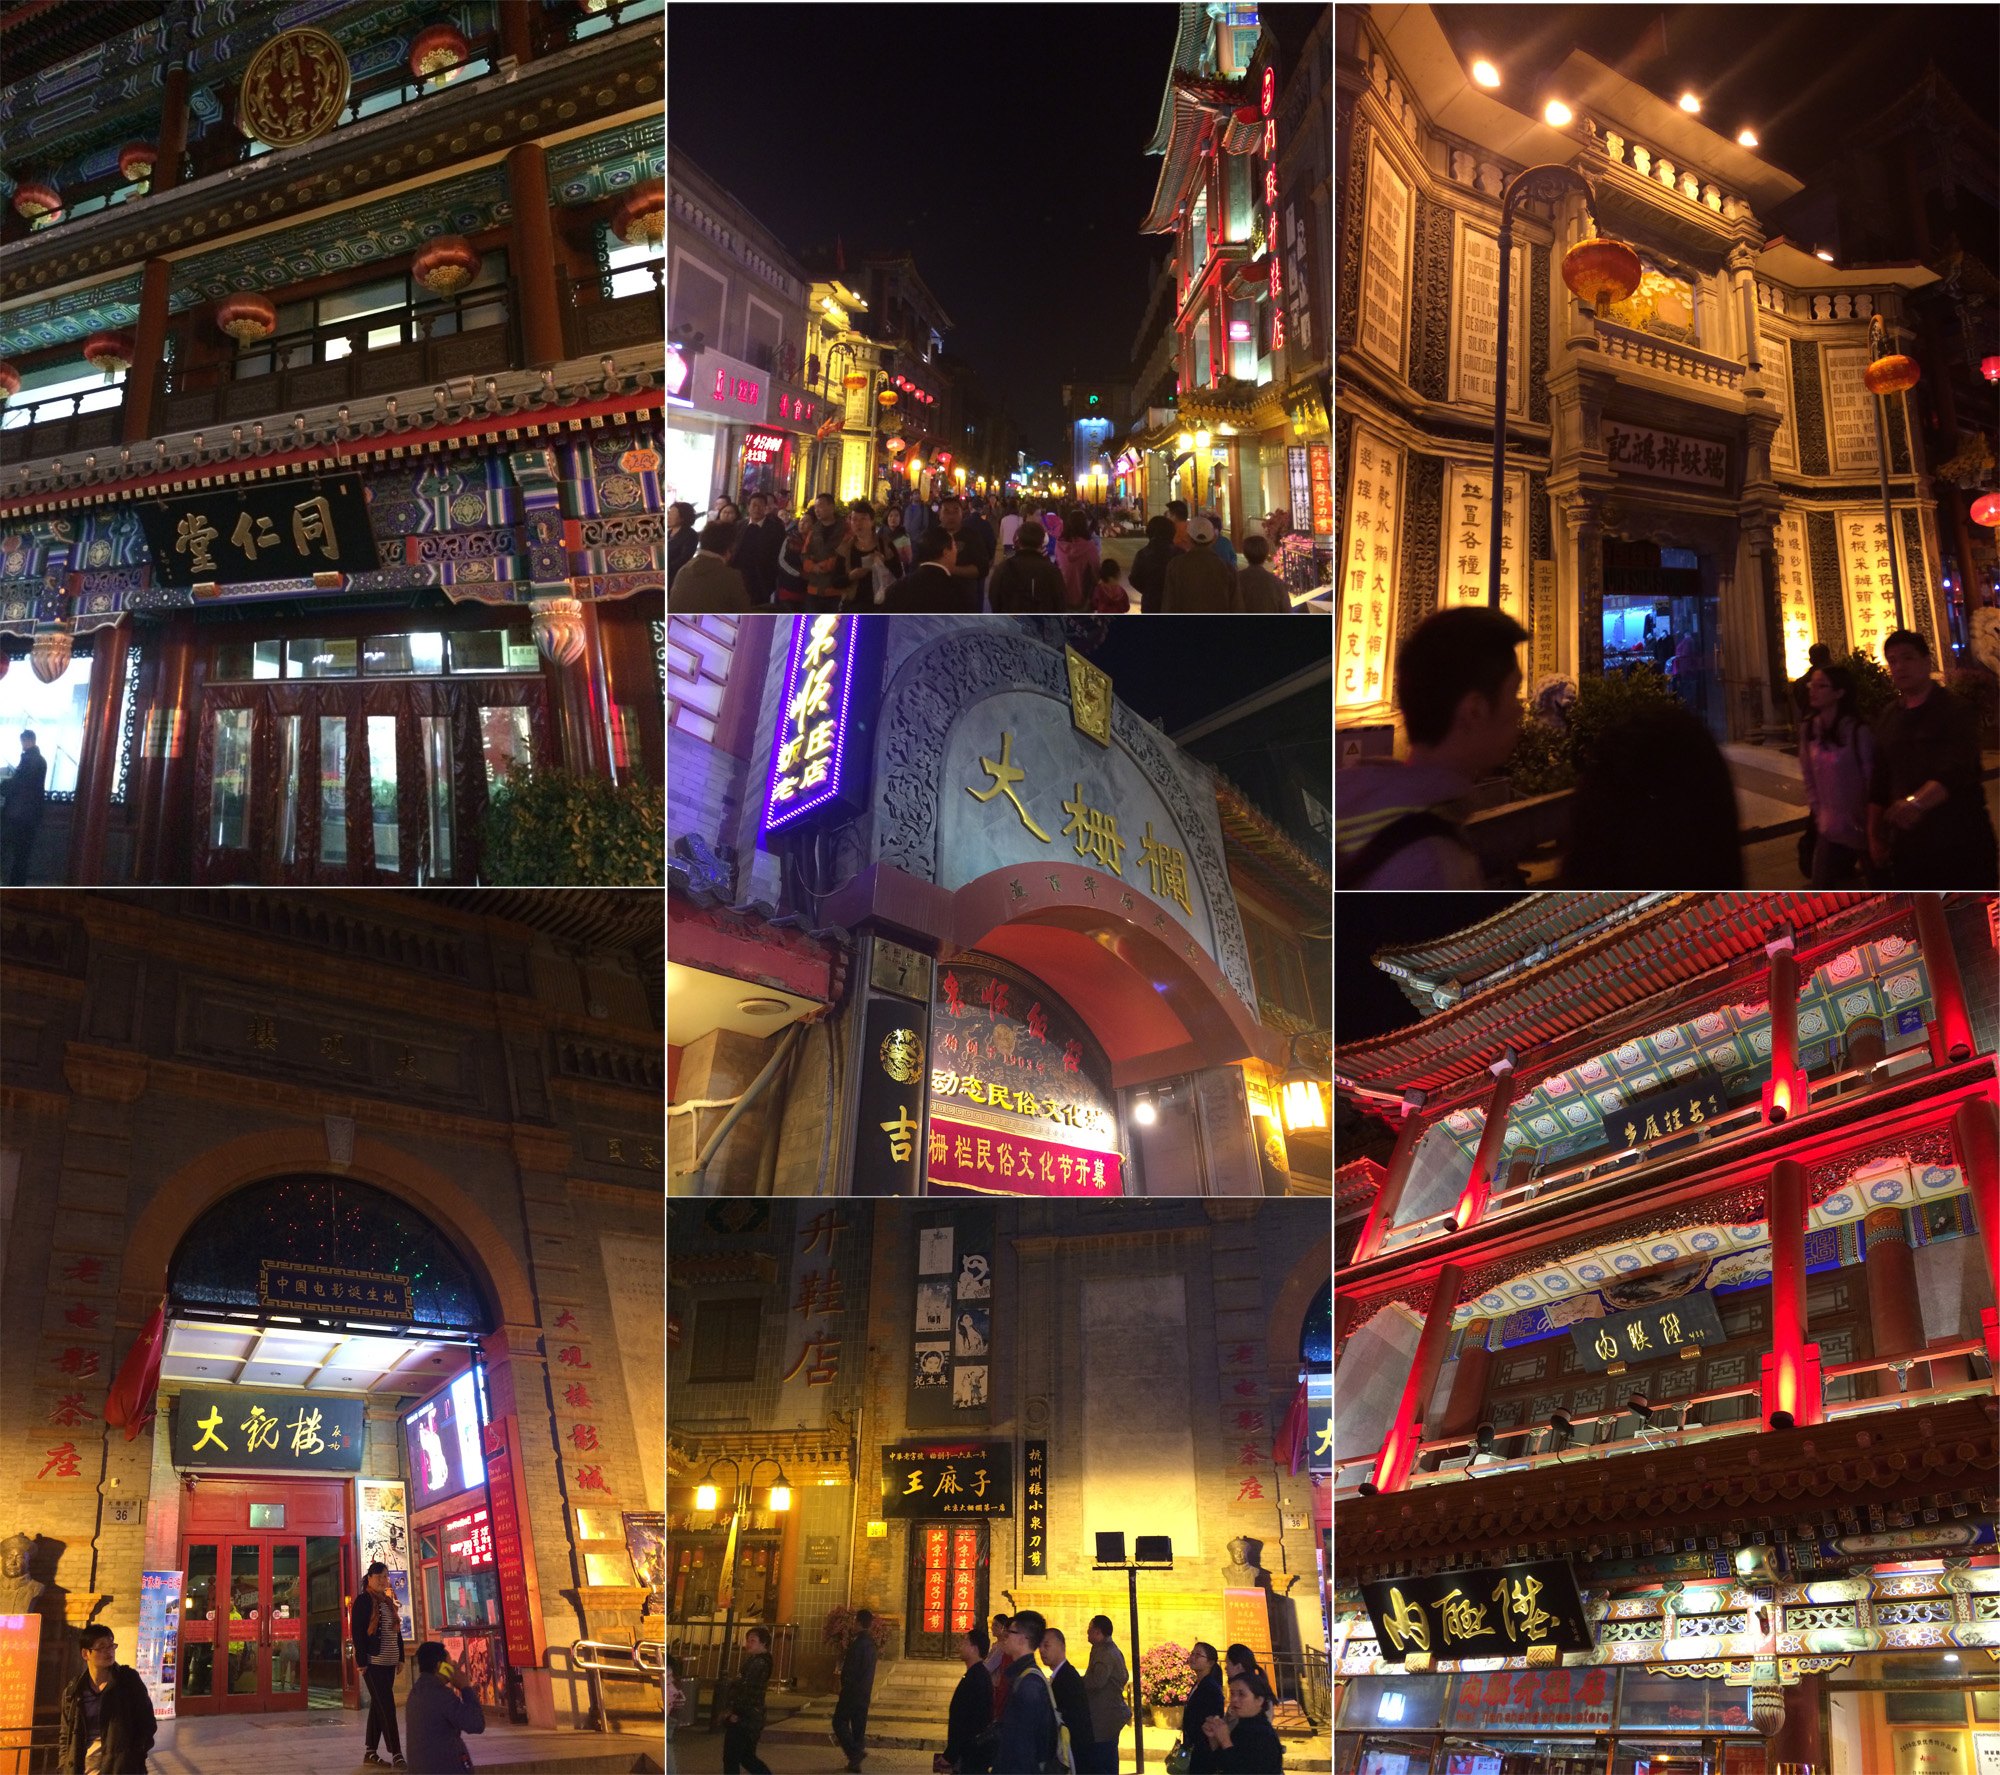 【携程攻略】北京大栅栏商业街购物,走进繁华的商业街大栅栏儿,这里